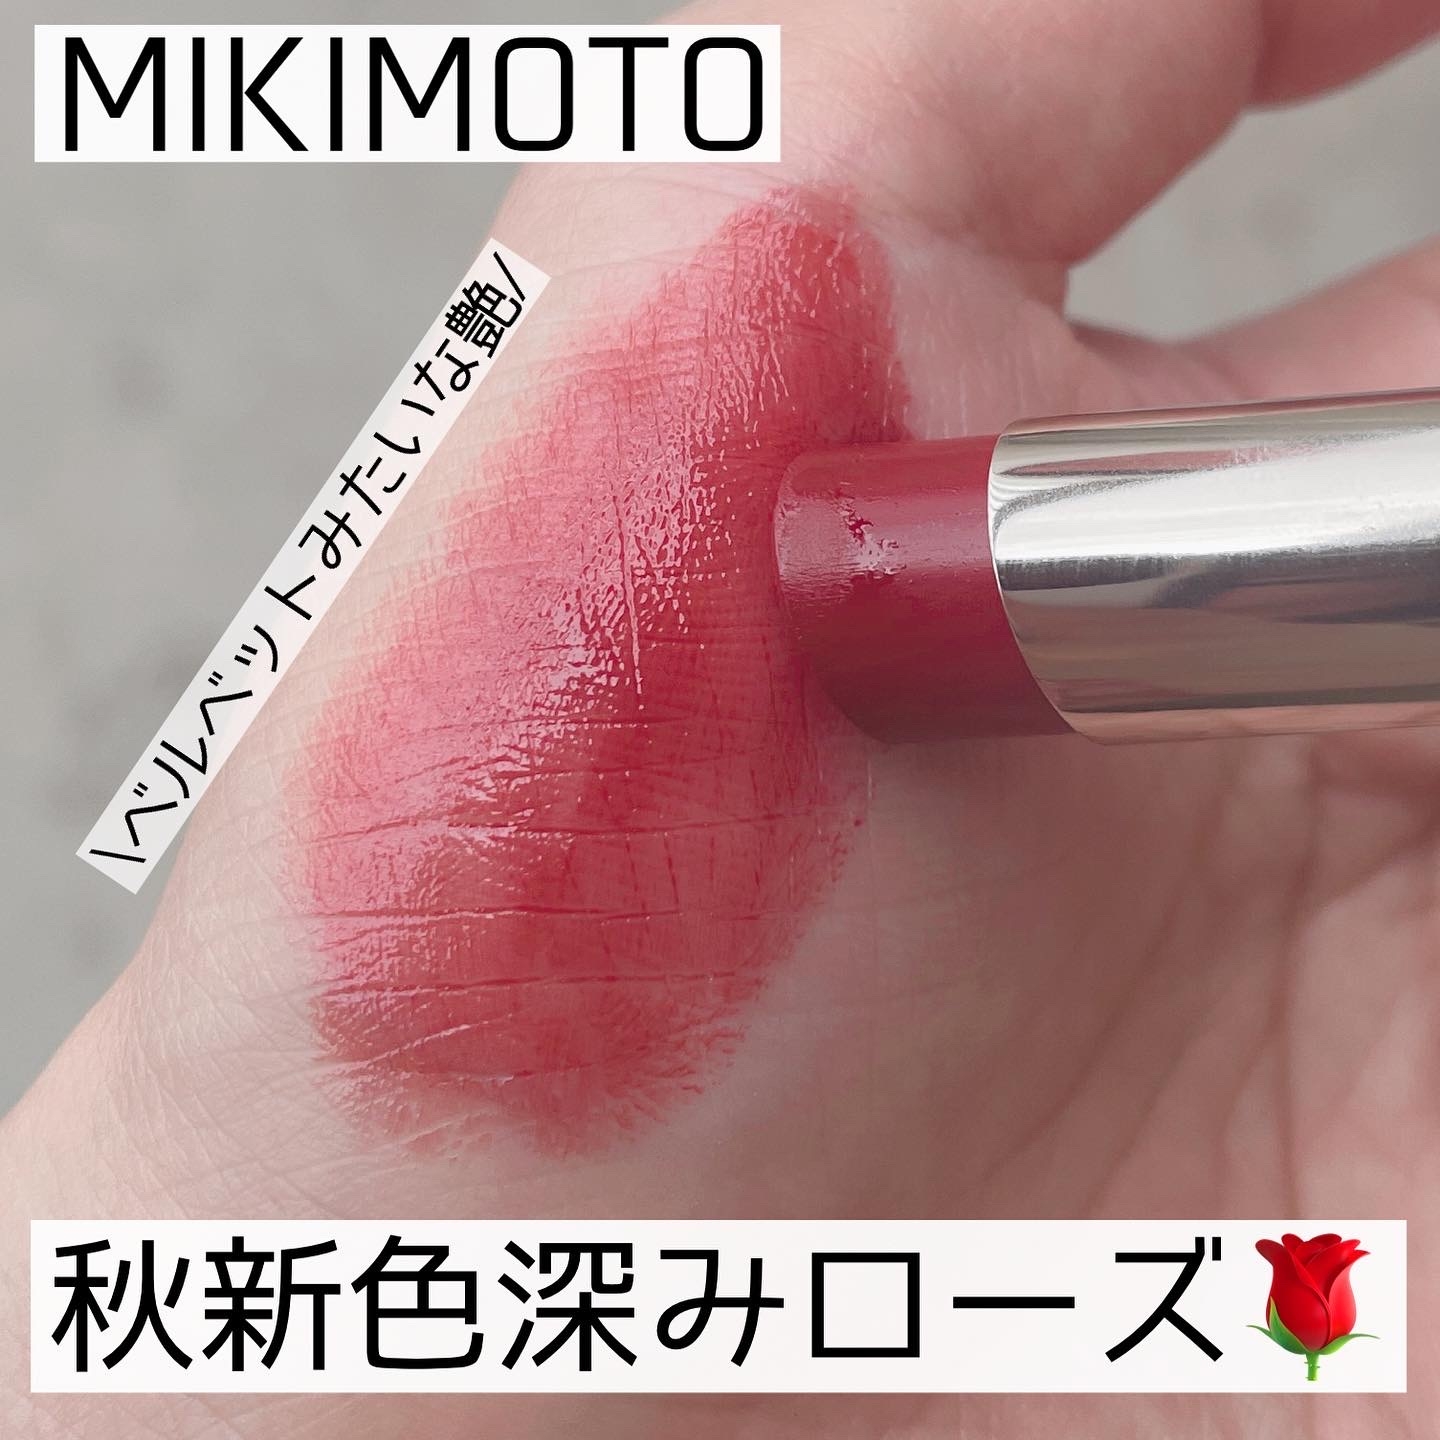 MIKIMOTO COSMETICS(ミキモトコスメティックス) パールプレシャスオーラ エモリエント リップスティックの良い点・メリットに関するなゆさんの口コミ画像1